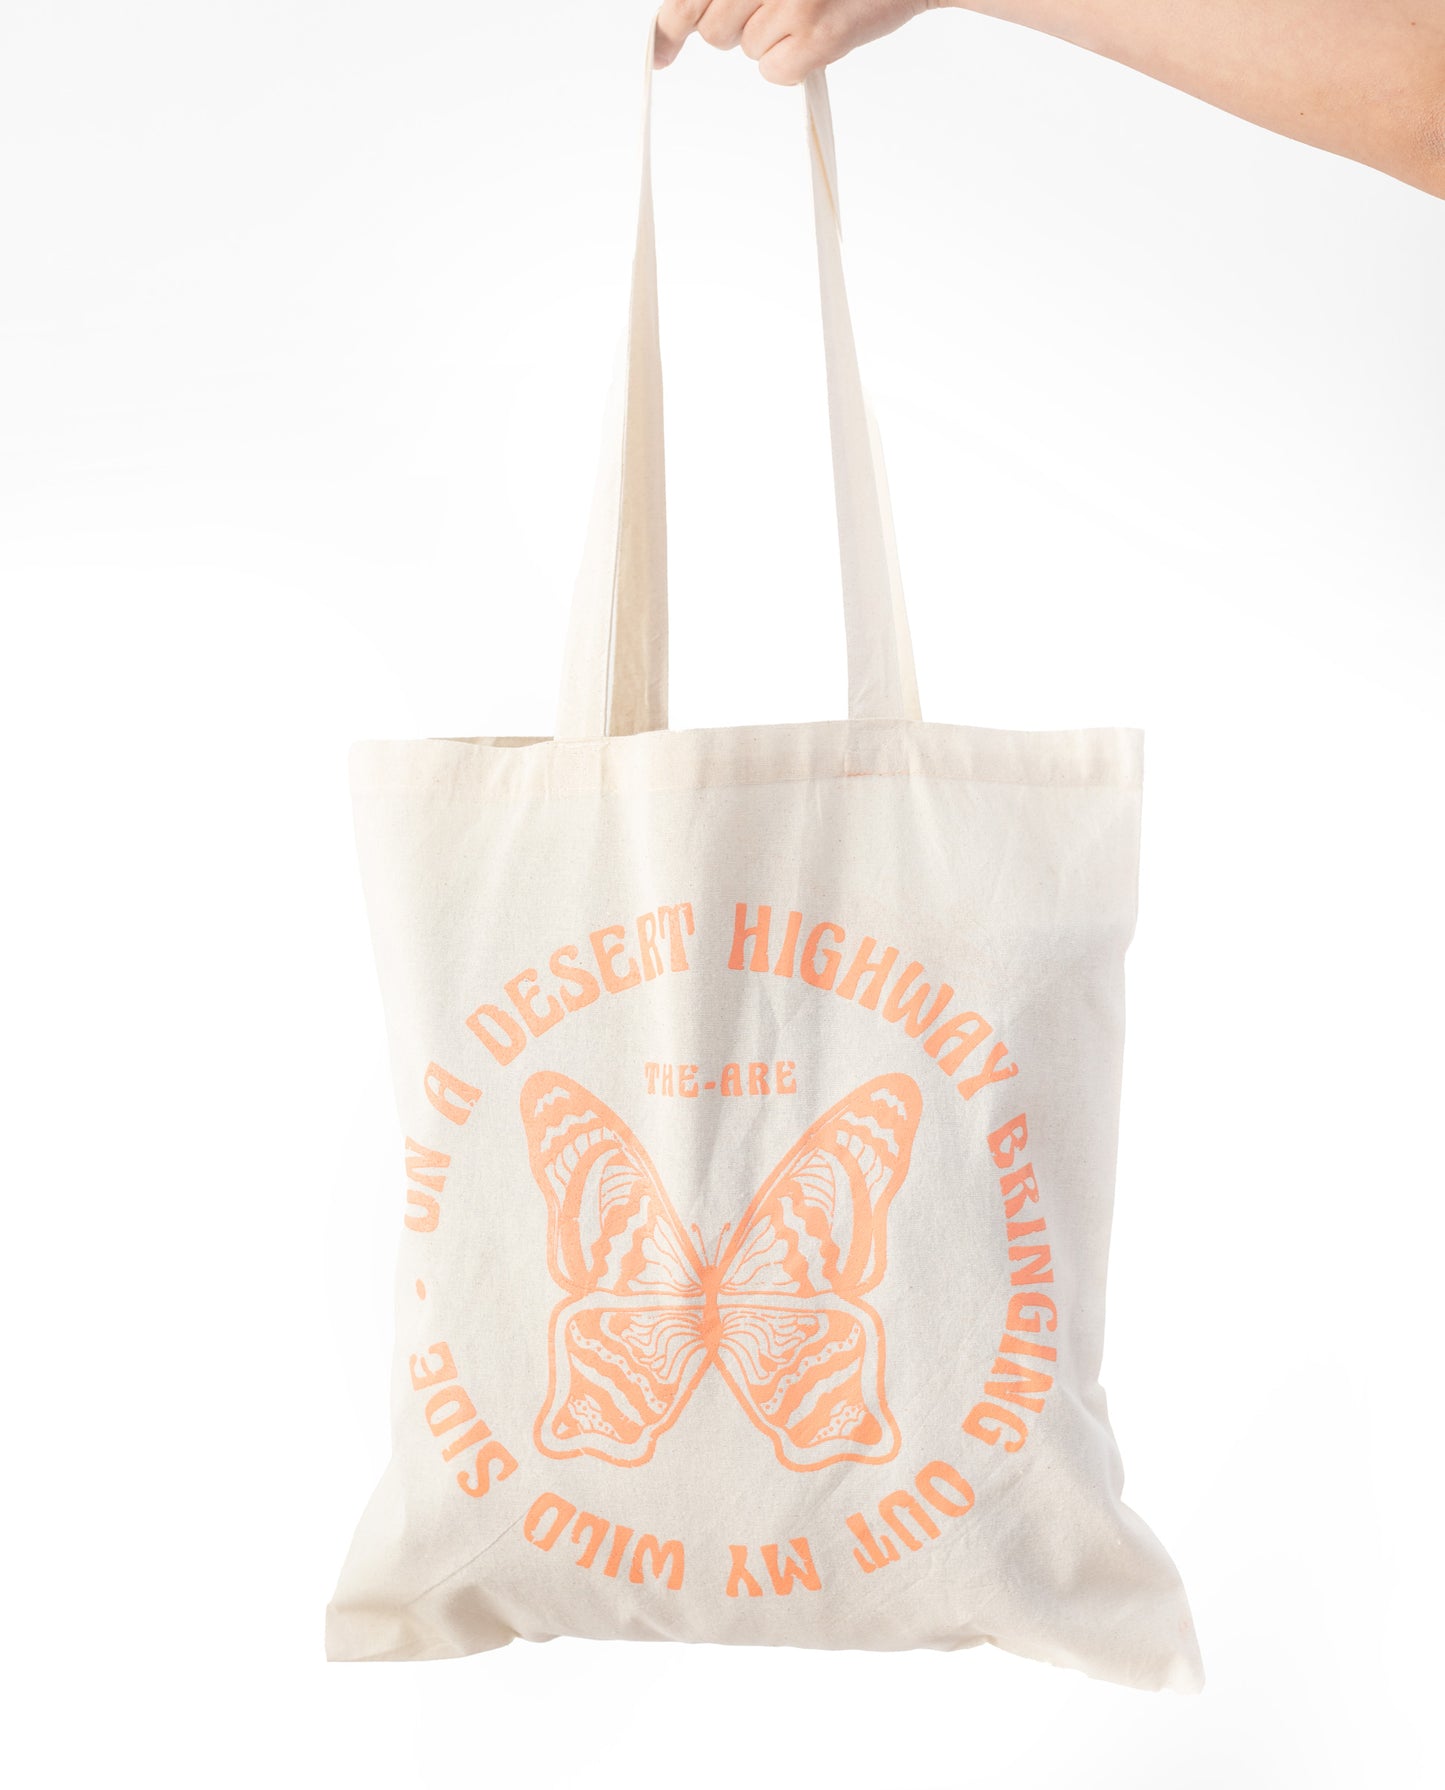 SHOPPING BAG | Bolsa de Tela Tote Bag con Serigrafía | Accesorios THE-ARE